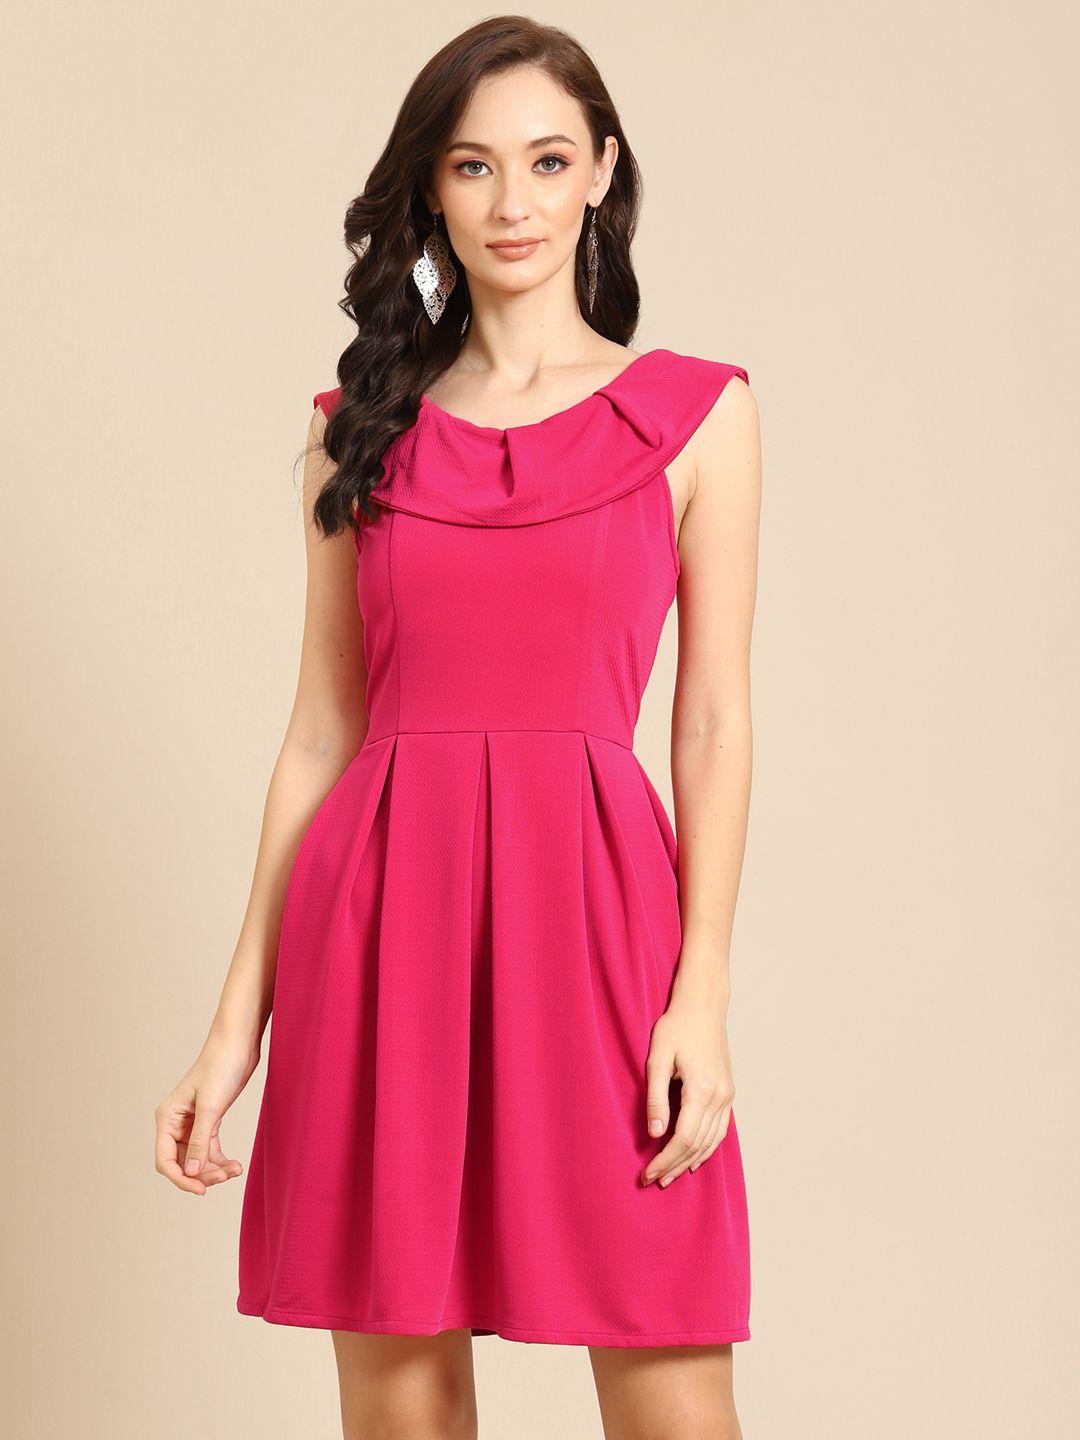 dodo-&-moa-pink-pleated-a-line-dress